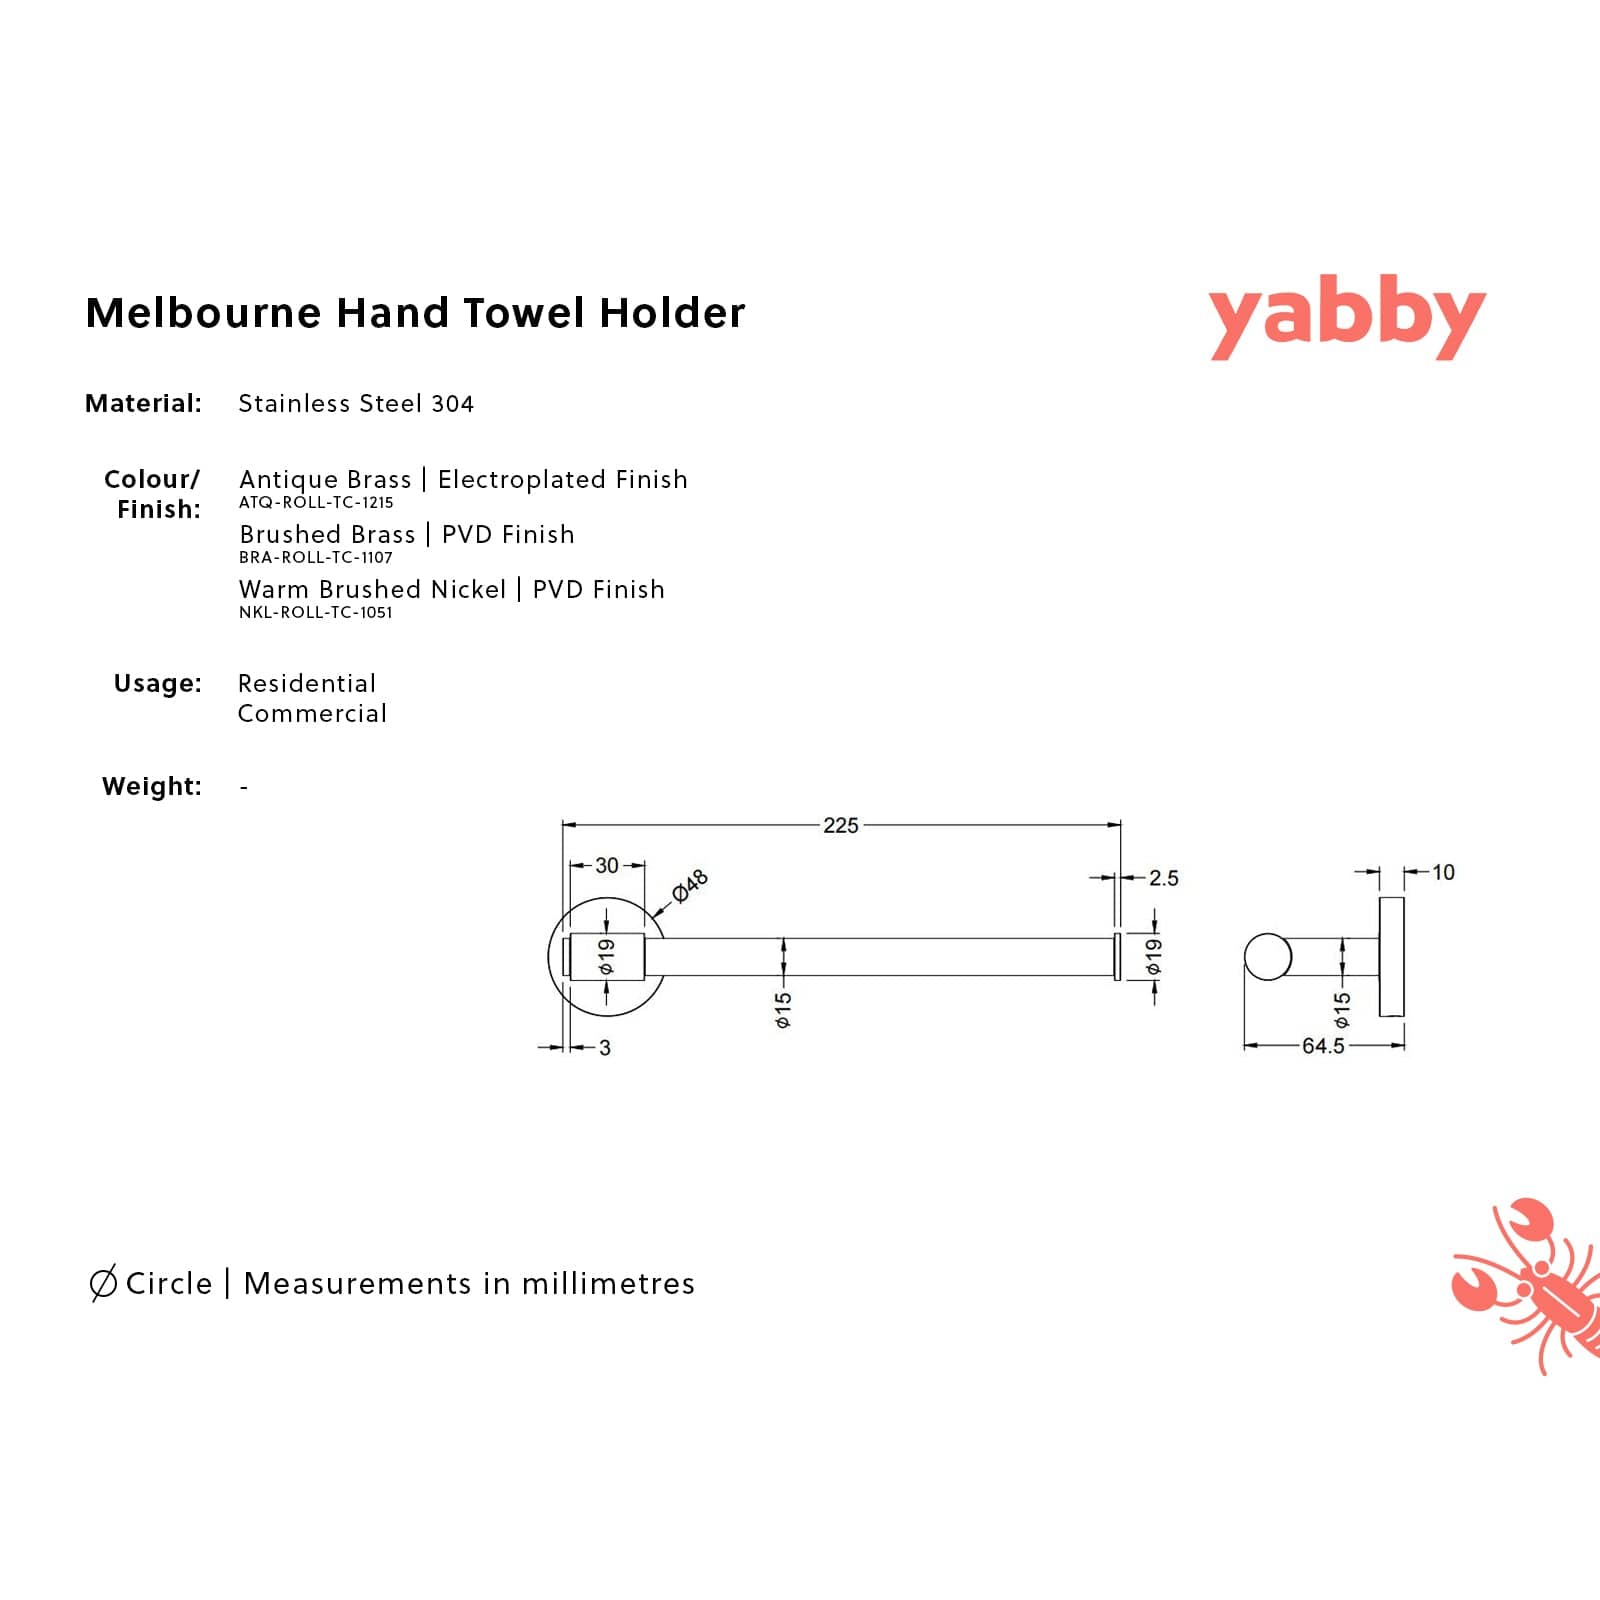 TileCloud TAPWARE Melbourne Hand Towel Holder Warm Brushed Nickel